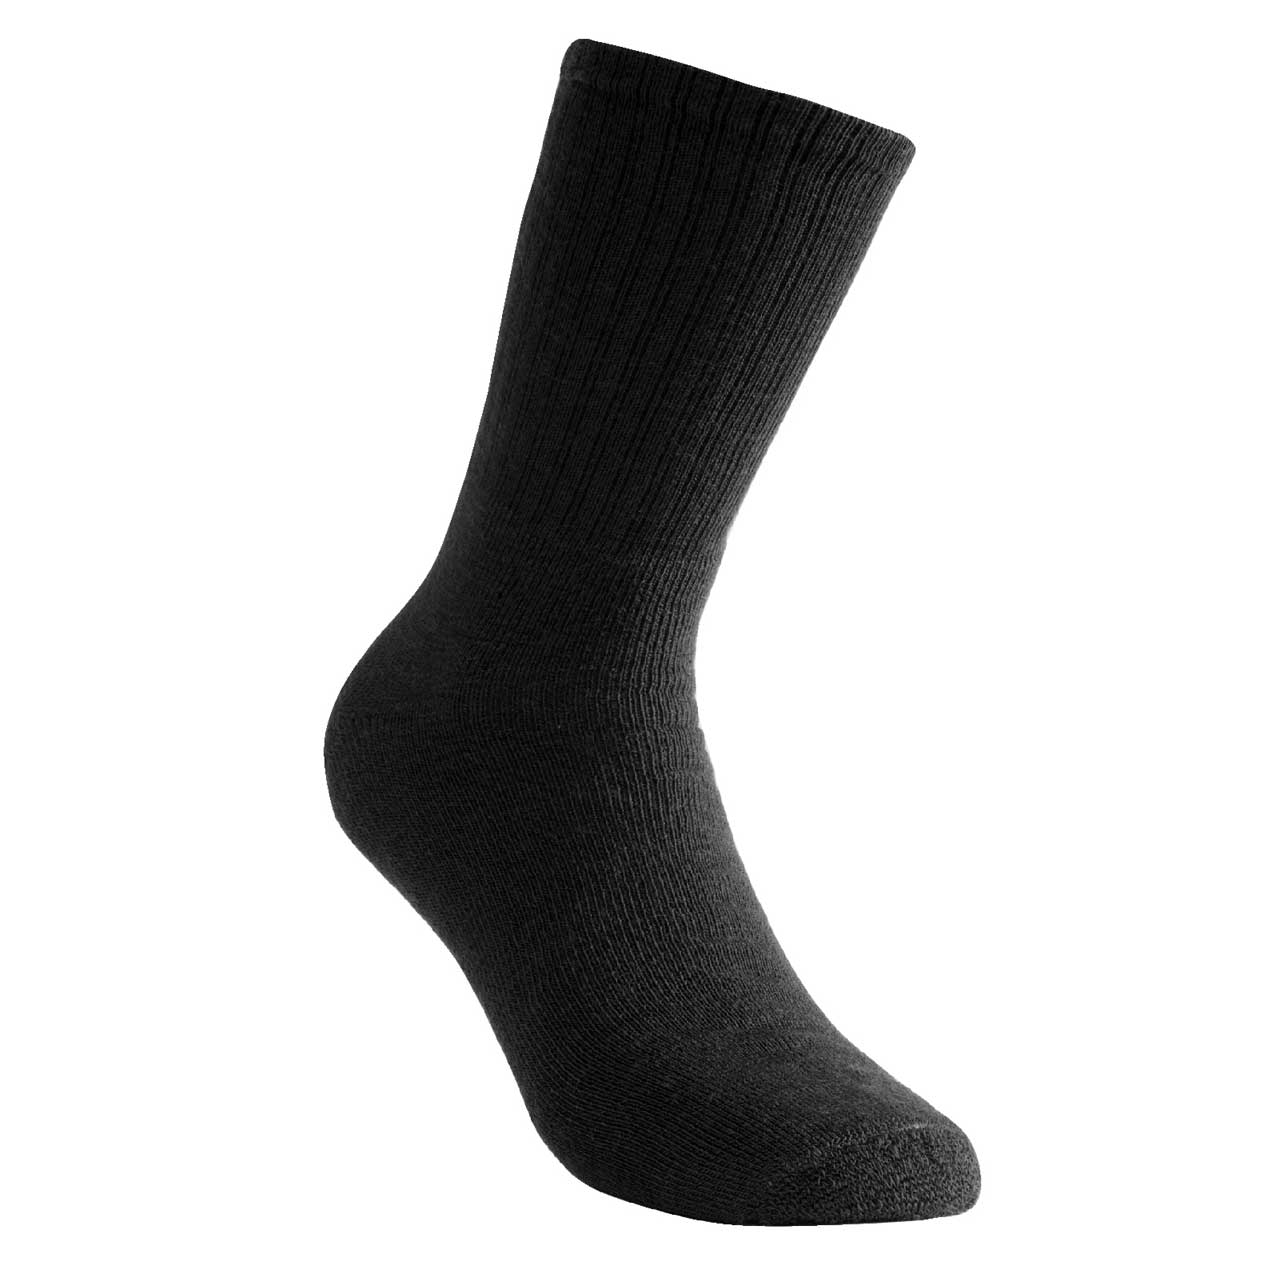 Woolpower Socken 200 - schwarz, 40-44